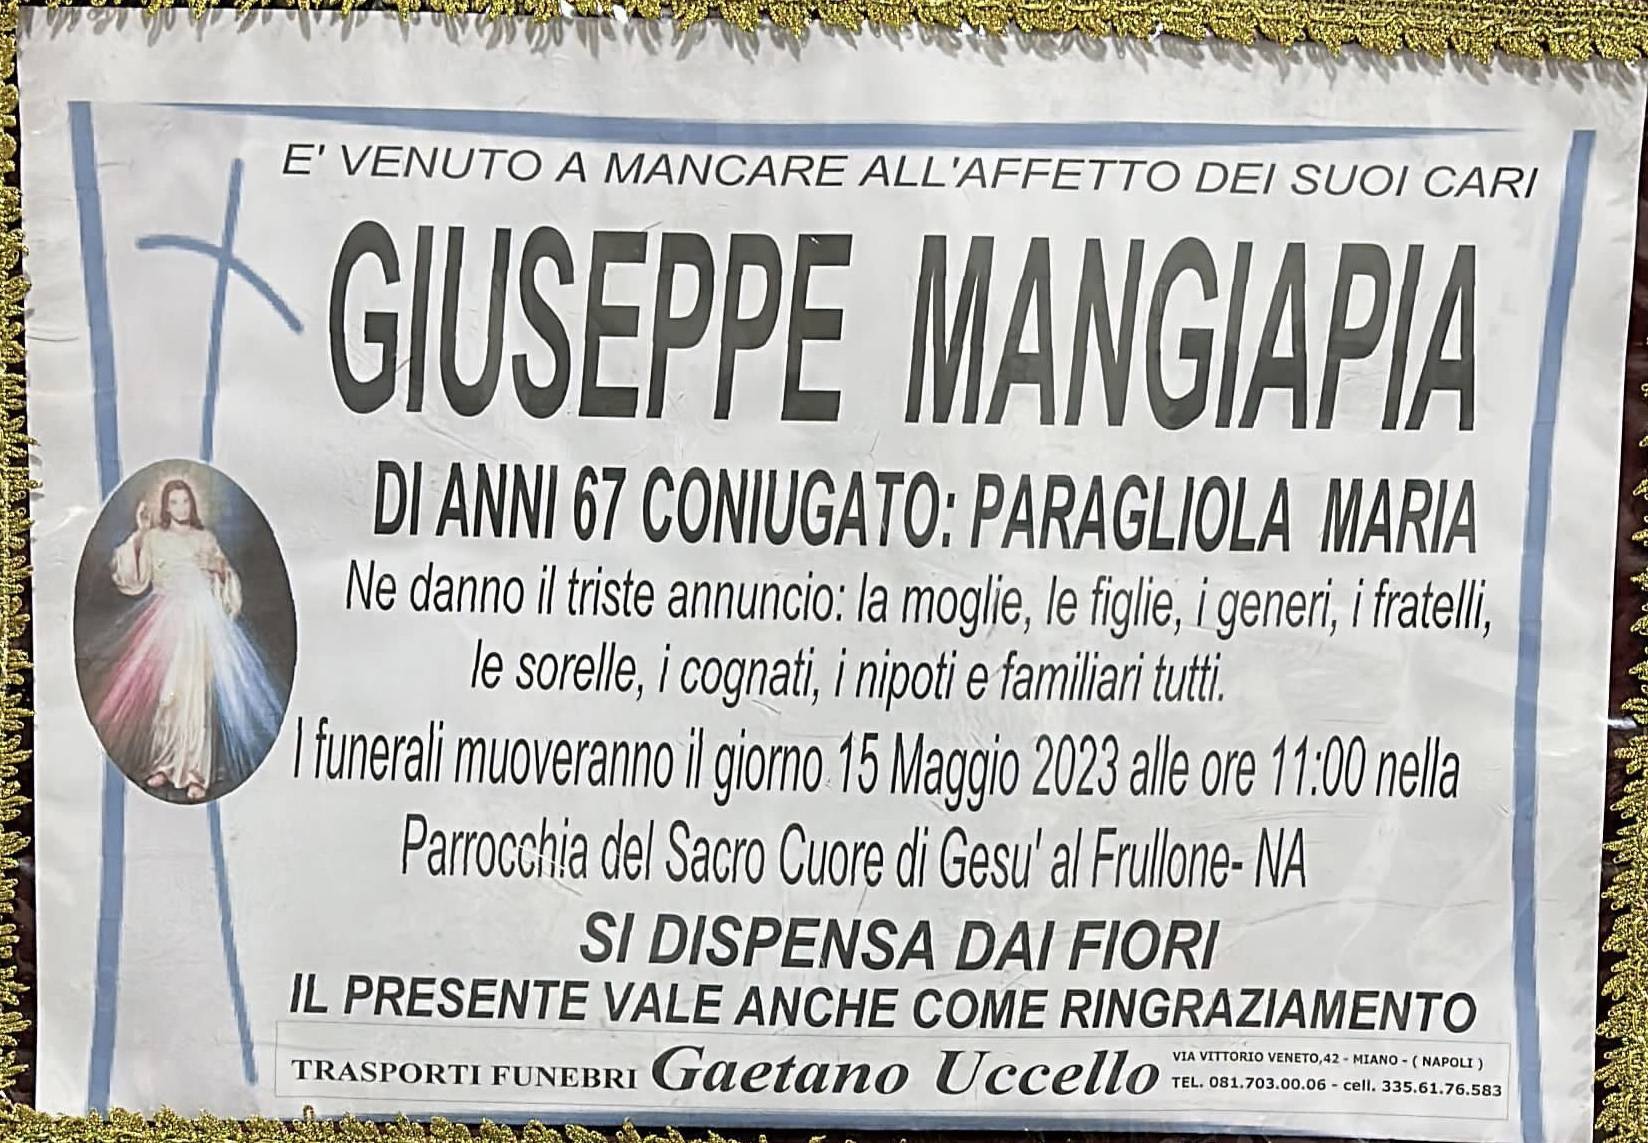 Giuseppe Mangiapia